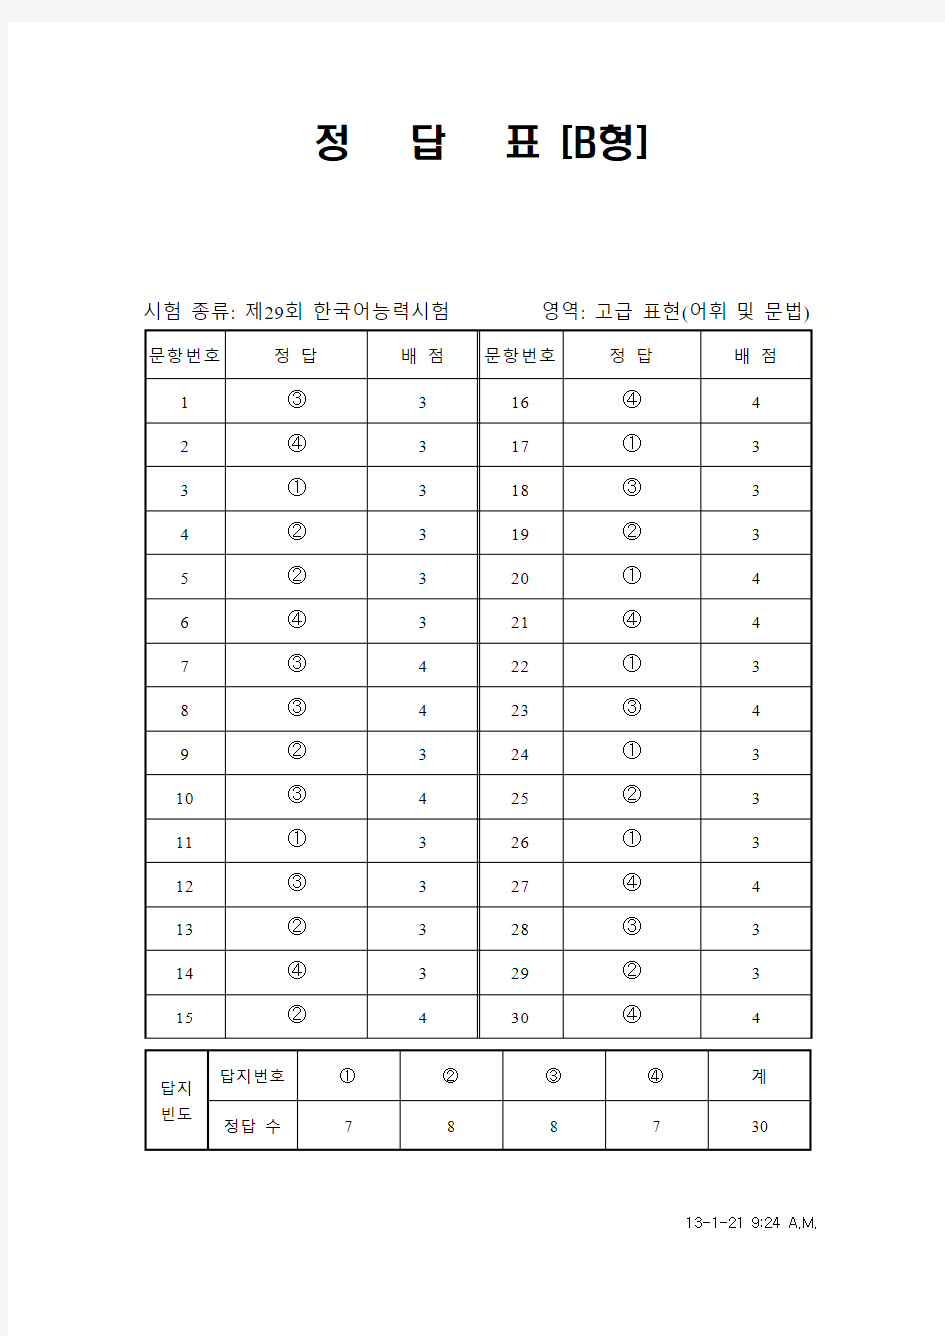 韩国语能力考试(TOPIK)真题资料【29】29届高级词汇和语法答案